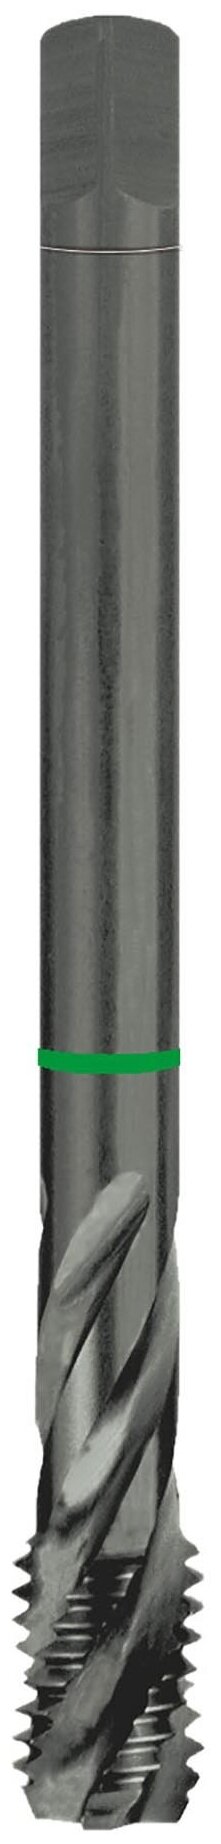 Метчик Ruko M10x1,5 (Машинный, спиральный) HSSE Co5 VAP DIN376 C/2,5P 6h R35 100мм 233100VA